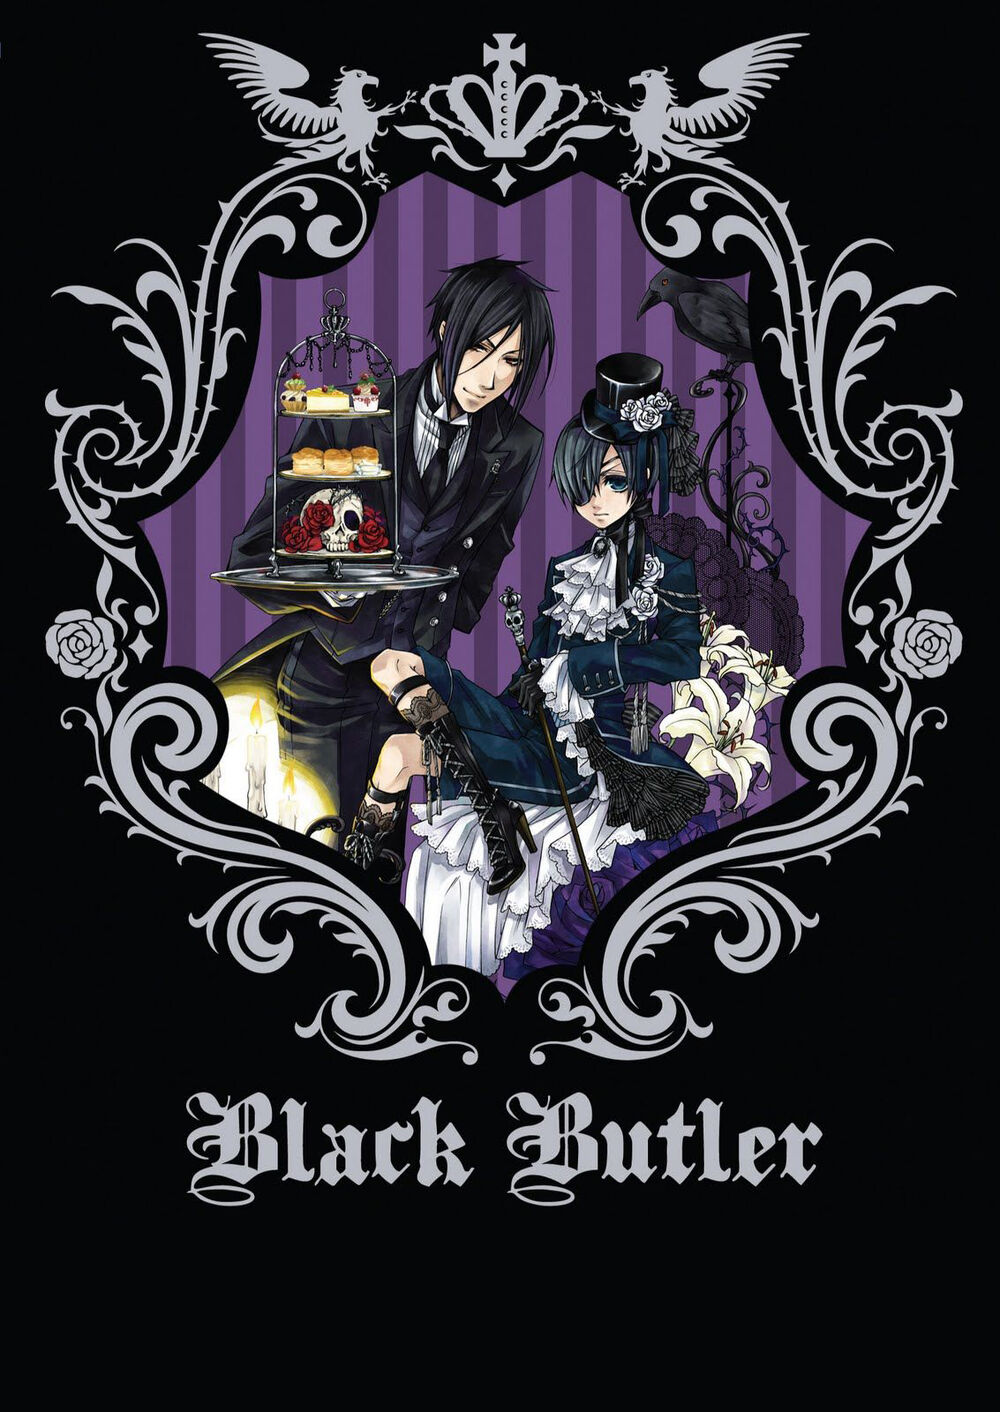 Black Butler' entra dublado completo na Funimation